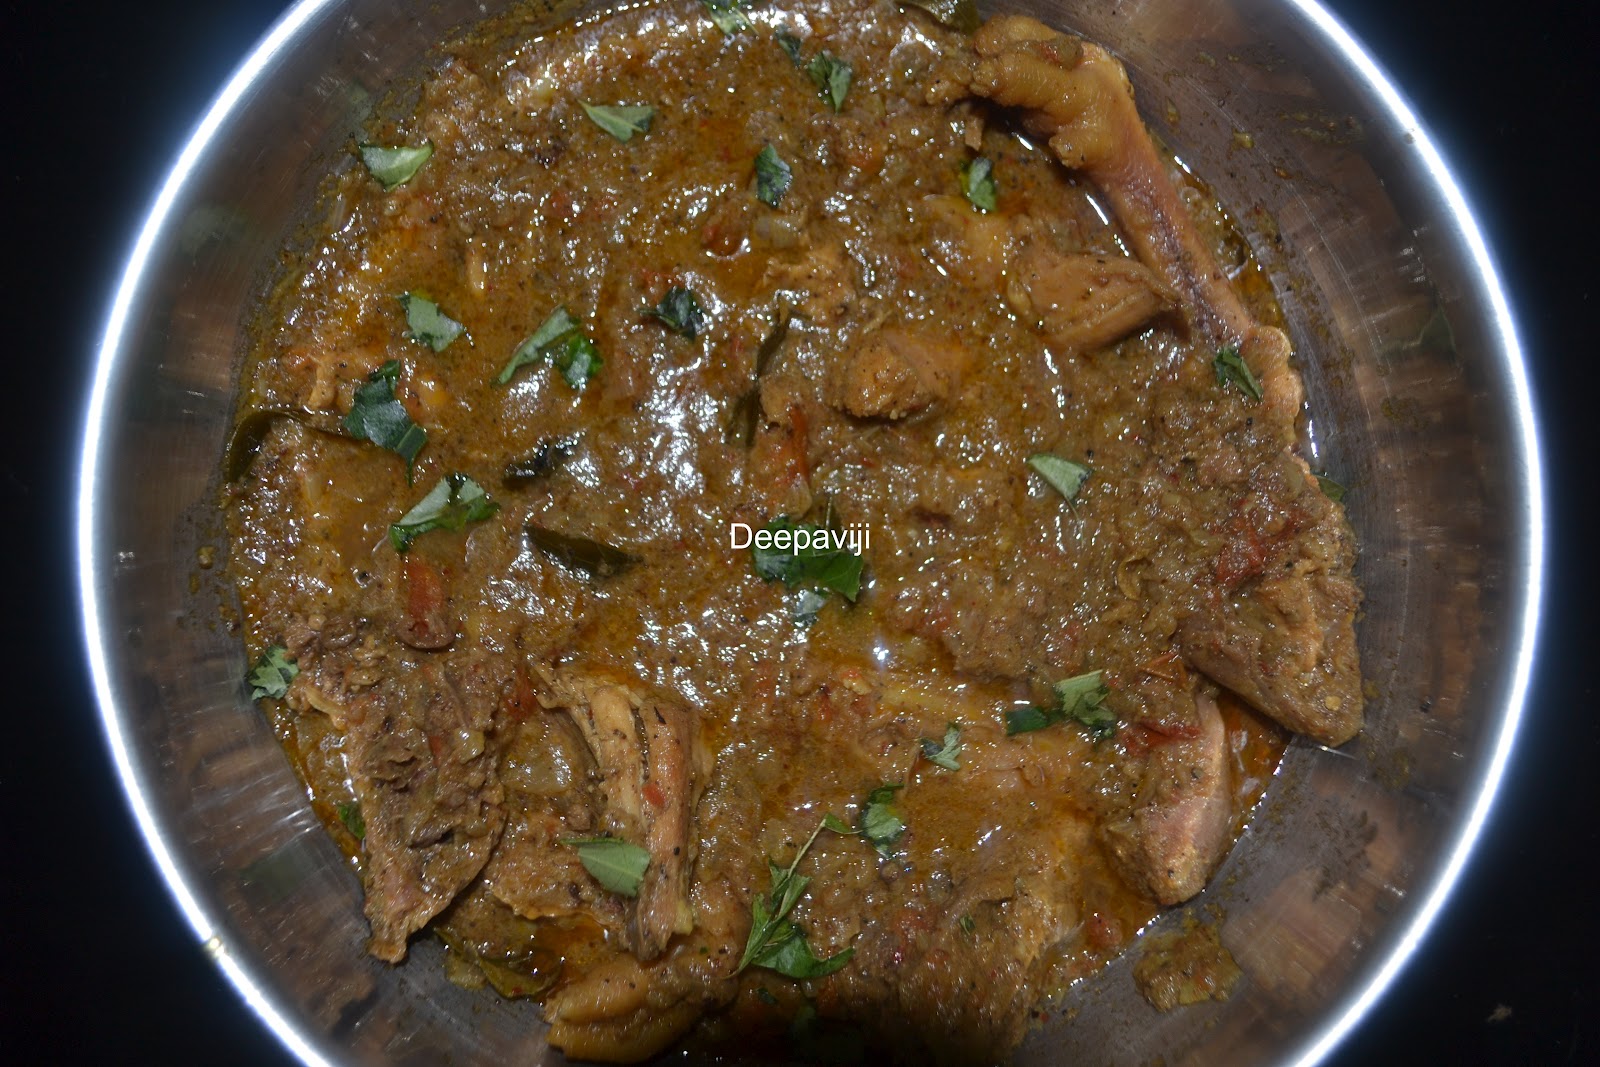 http://foodandbeyondfans.blogspot.com/2012/08/country-chicken-pepper-masalanattu.html